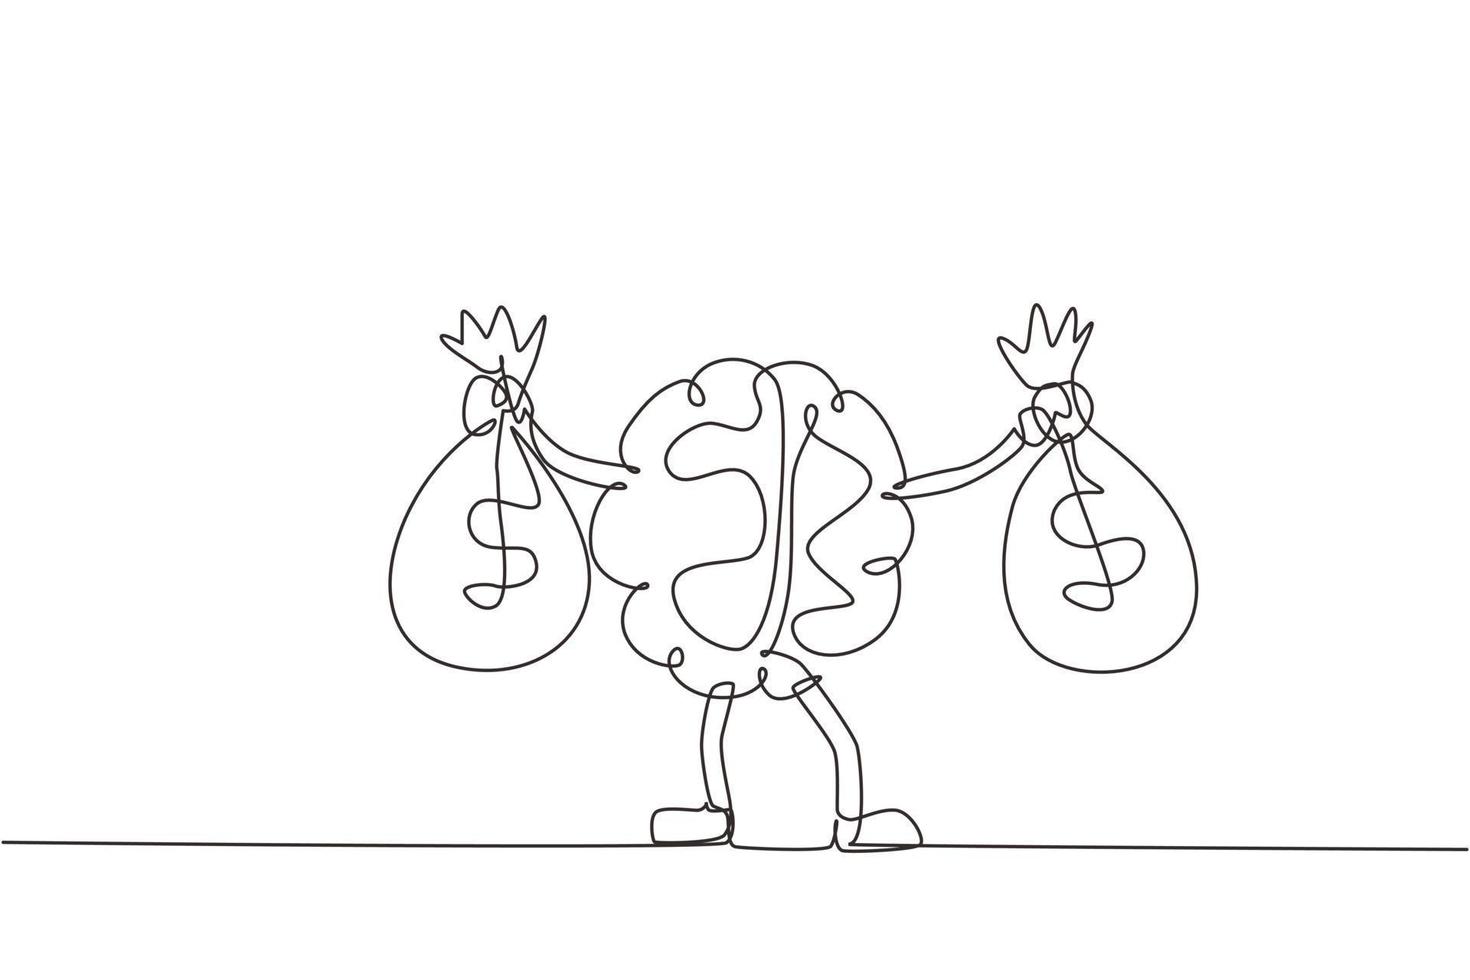 cerebro de dibujo de una sola línea continua sosteniendo una bolsa de dinero con dos manos. linda ilustración de personaje de mascota cerebral sosteniendo una bolsa llena de dinero. Ilustración de vector de diseño gráfico de dibujo de una línea dinámica